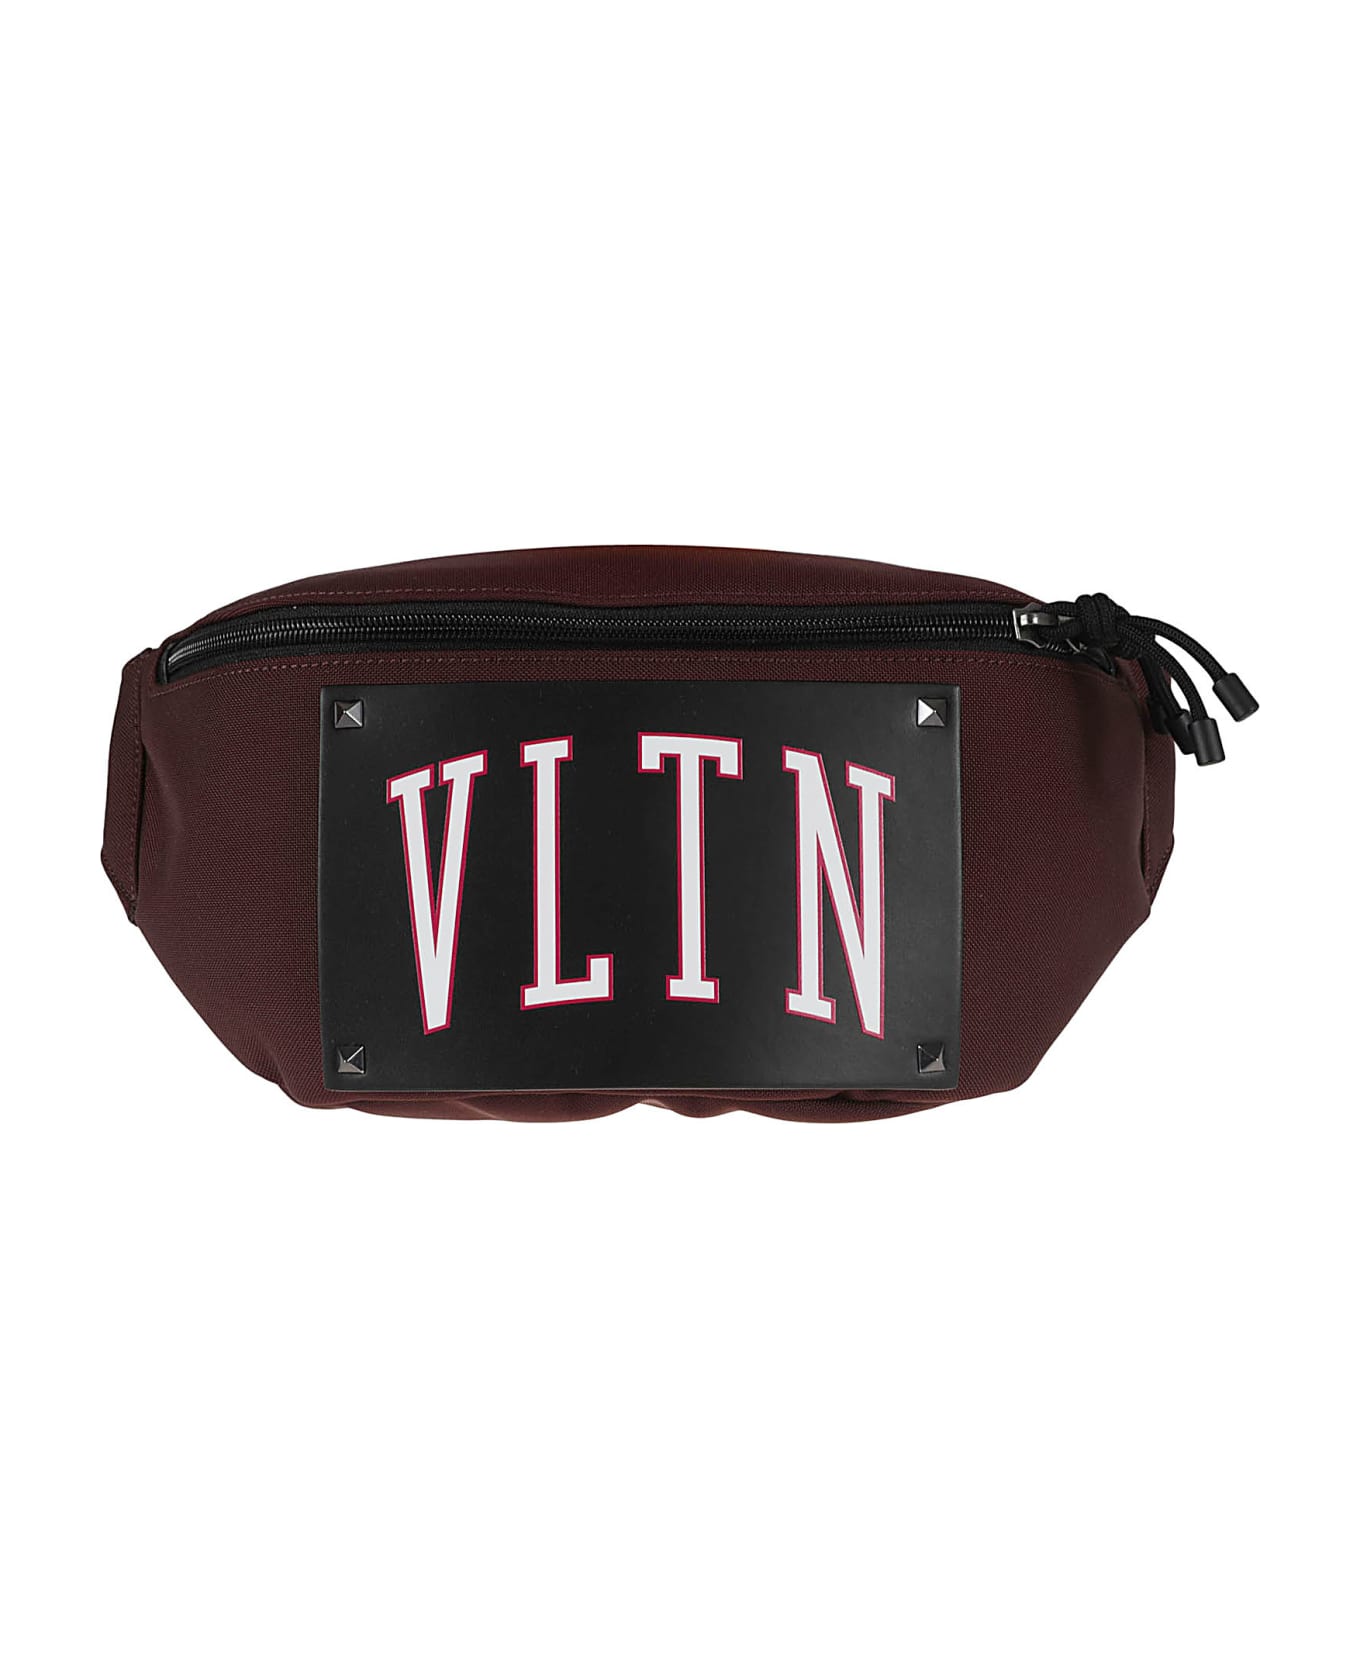 Valentino Garavani Logo Front Belt Bag - Bordeaux/Black ベルトバッグ